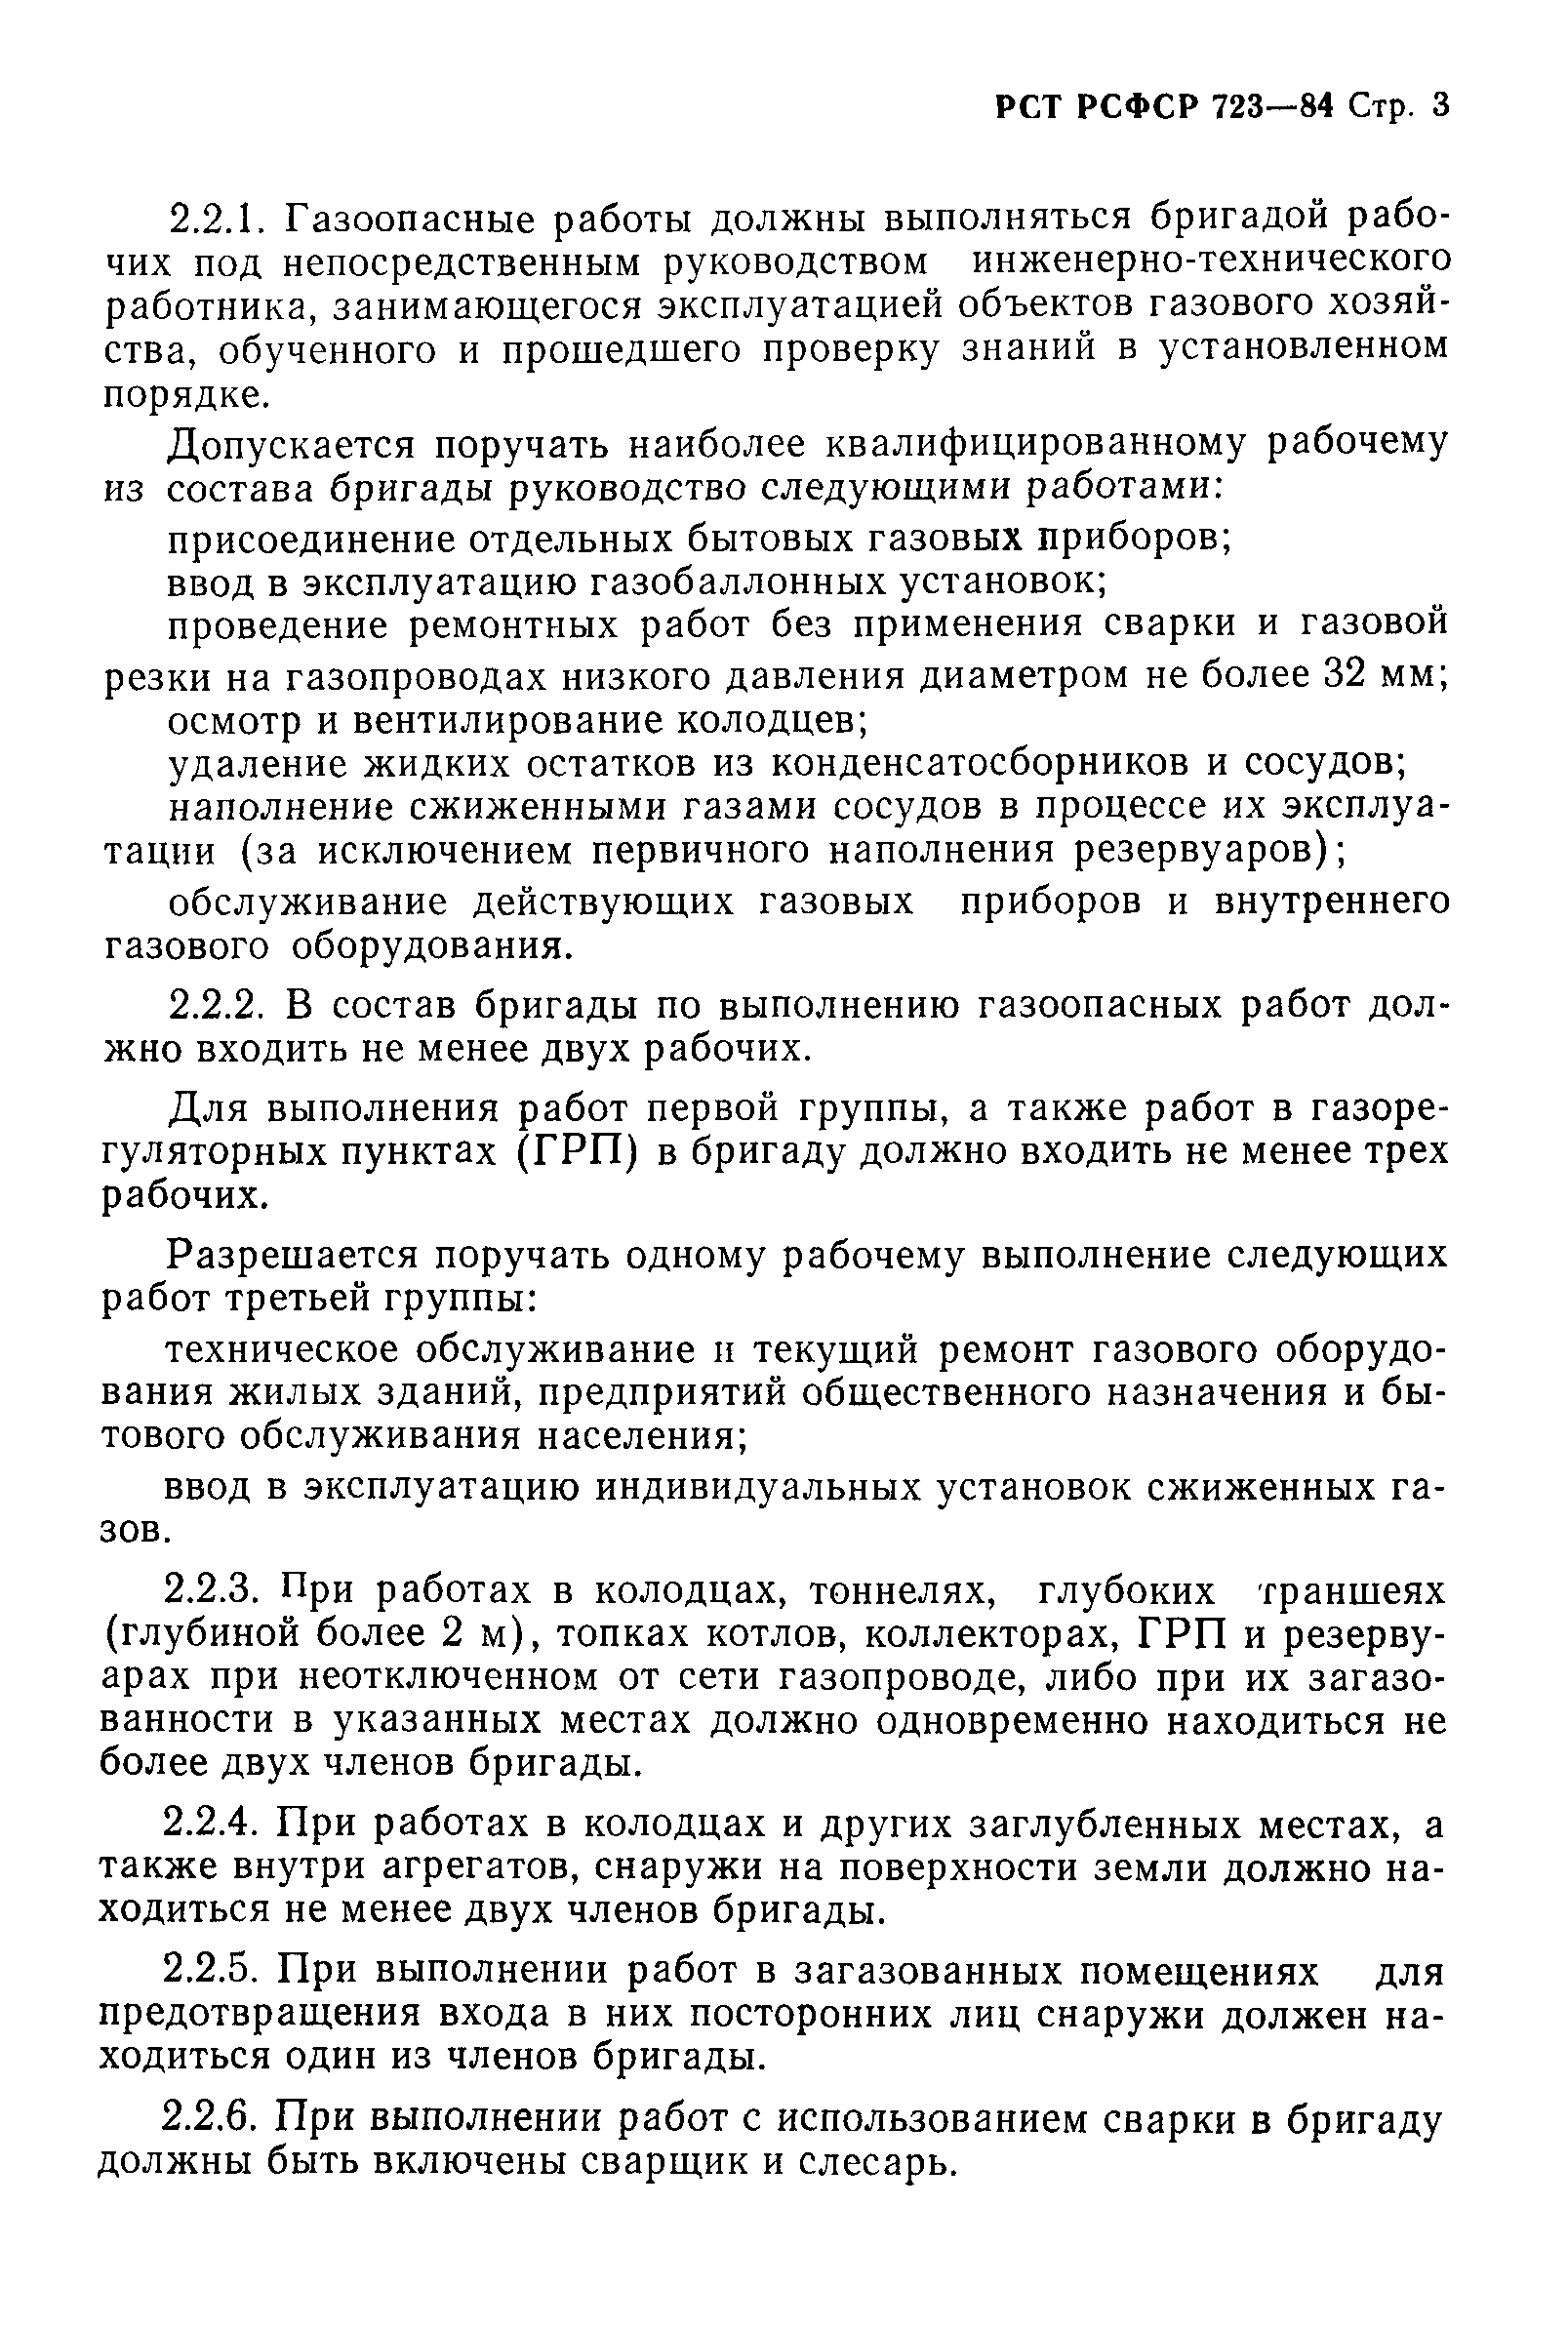 РСТ РСФСР 723-84